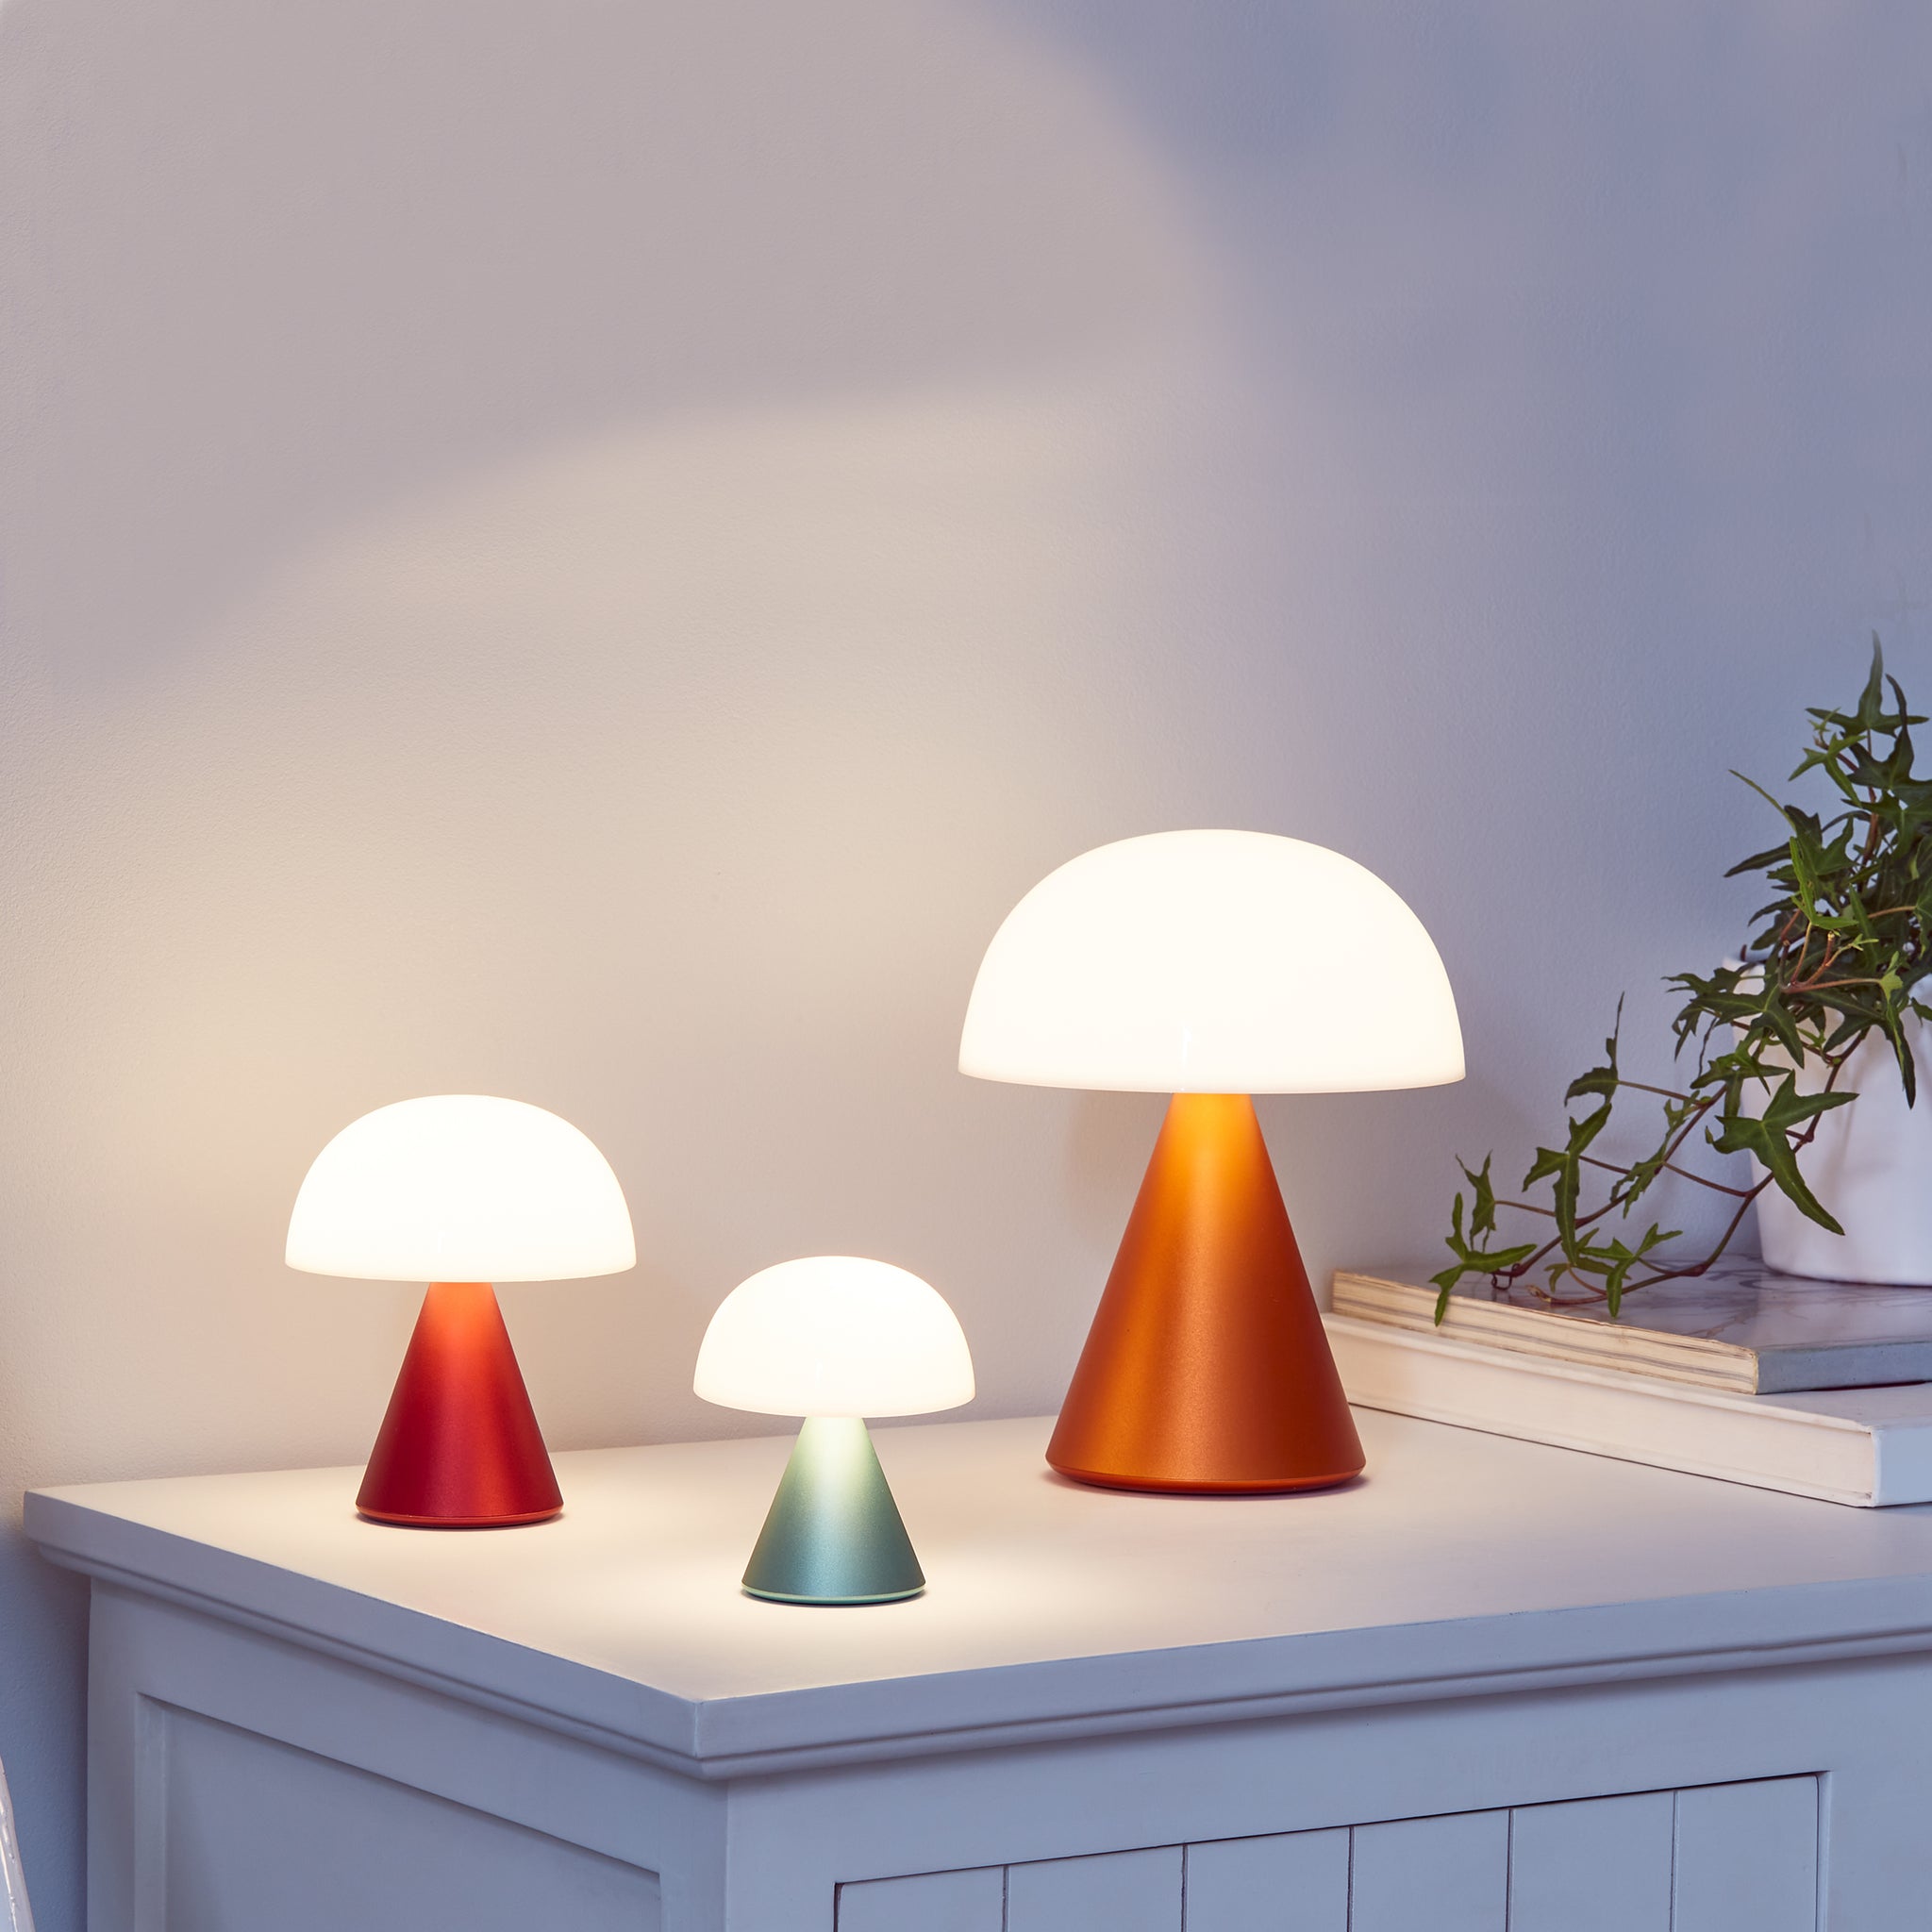 Lexon Mina Medium Mint Groen│LH64M1│Oplaadbare LED-Lamp│3 verschillende afmetingen